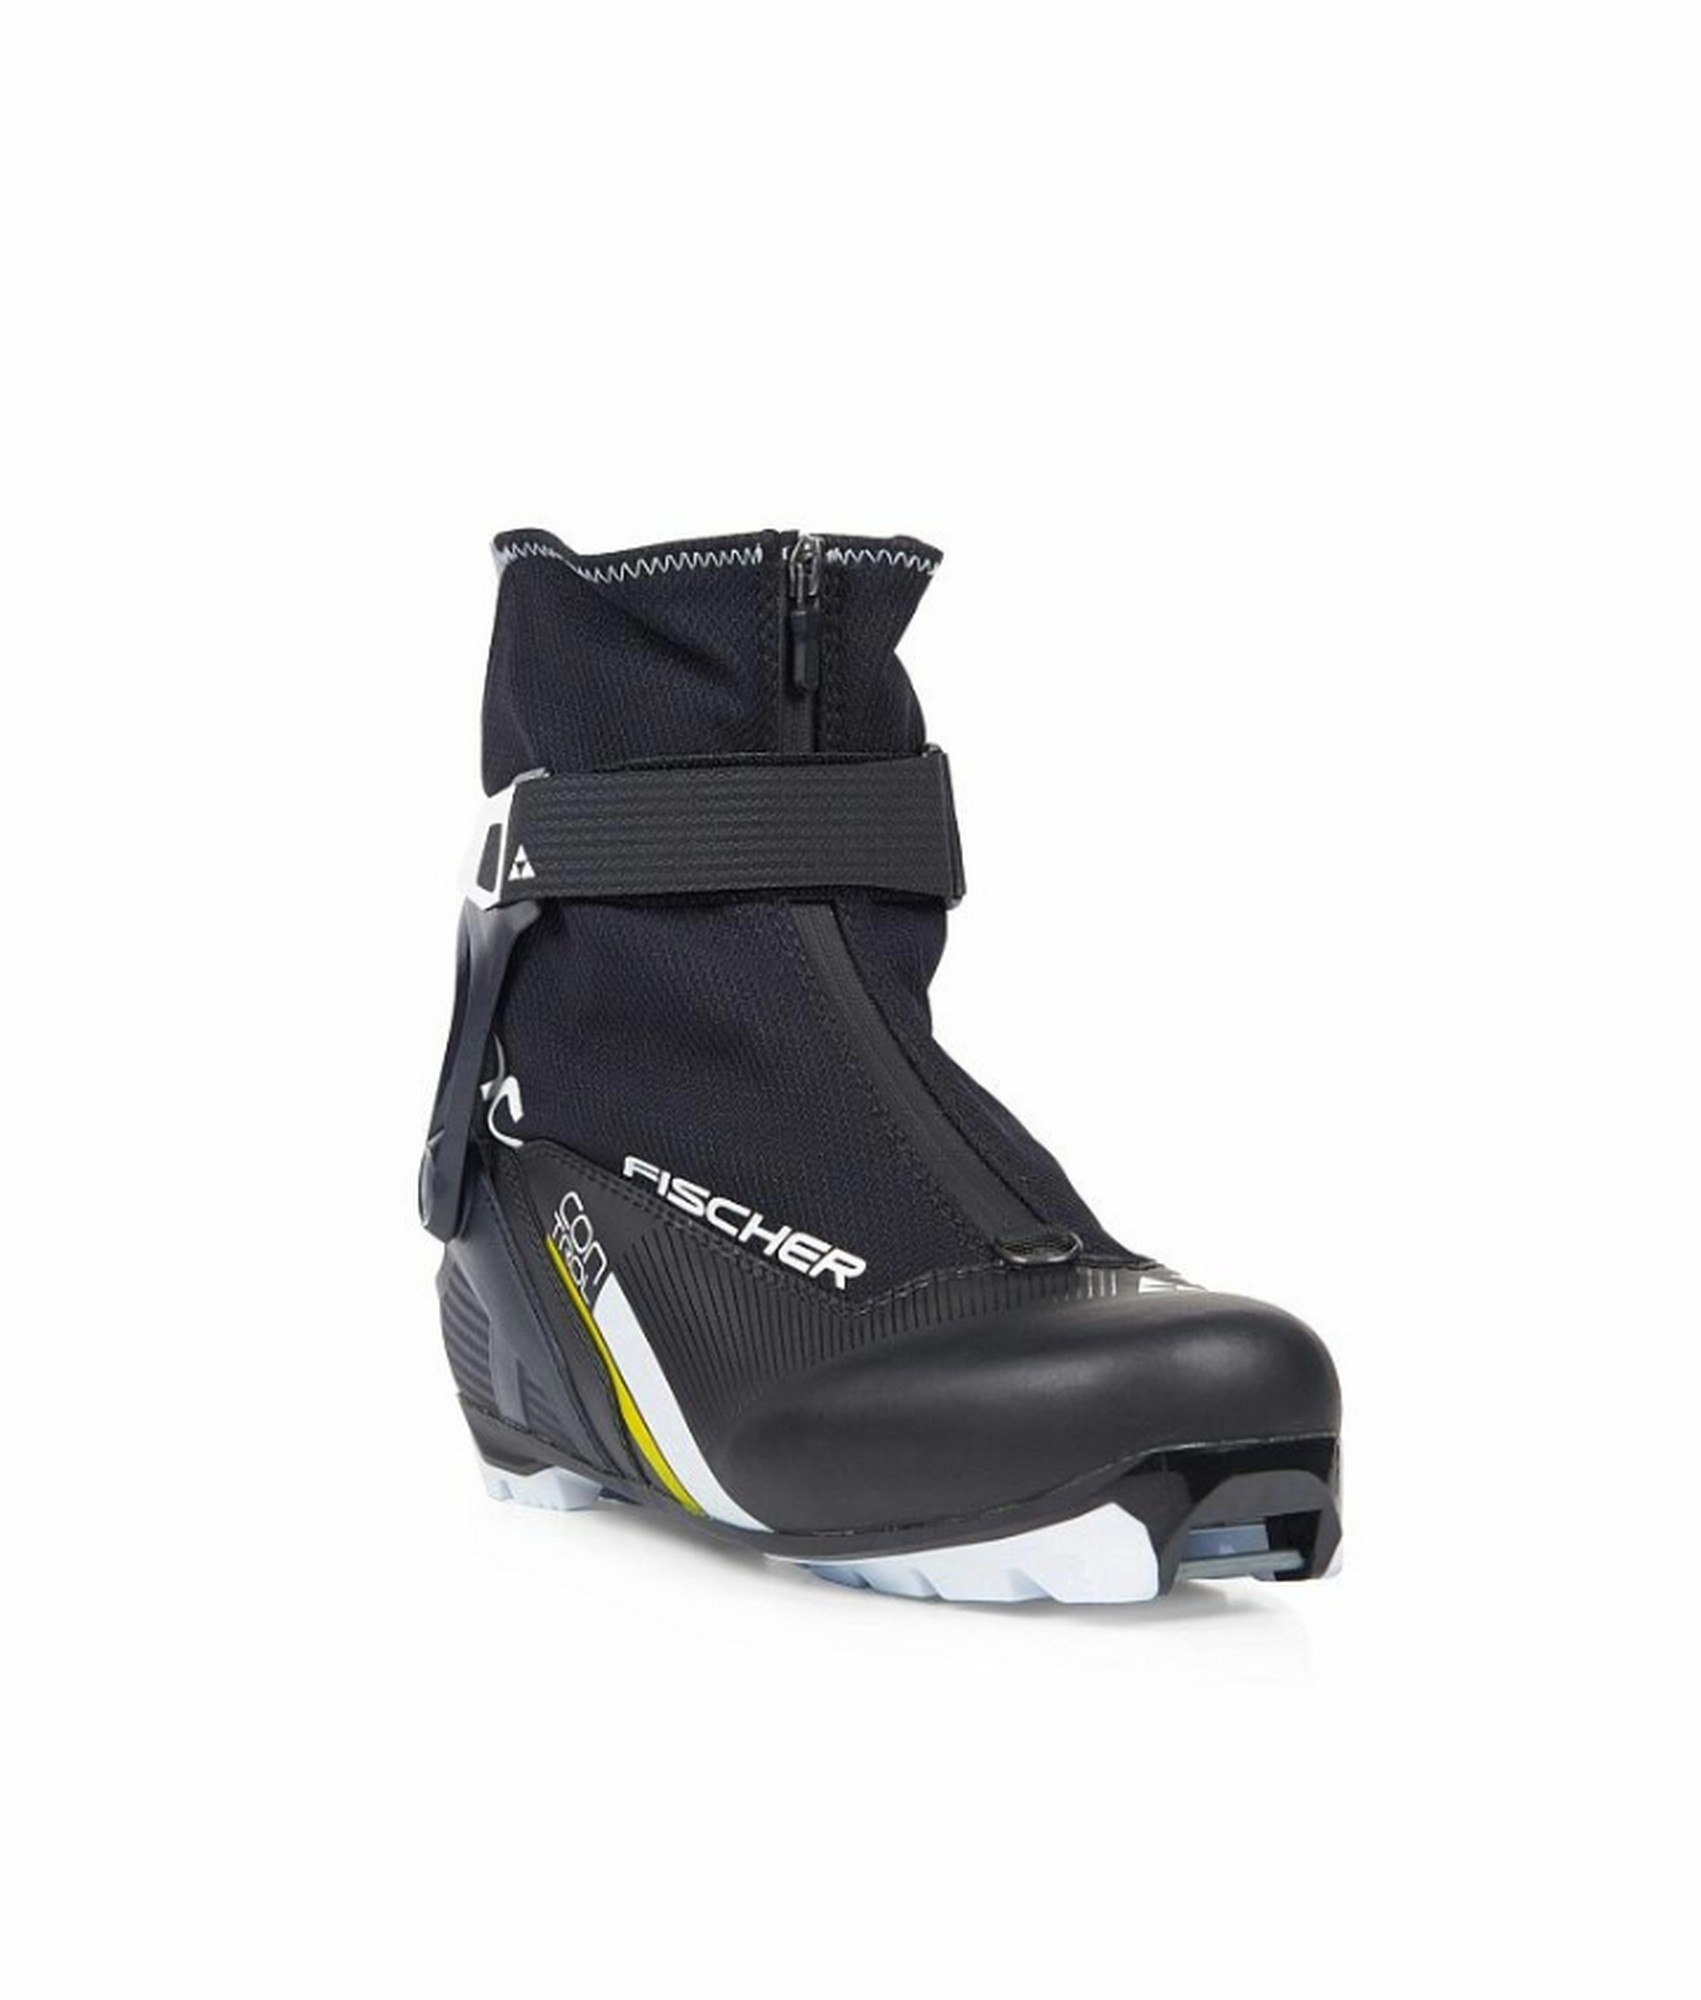 Лыжные ботинки Fischer NNN XC Control S20519 черный 1701_2000